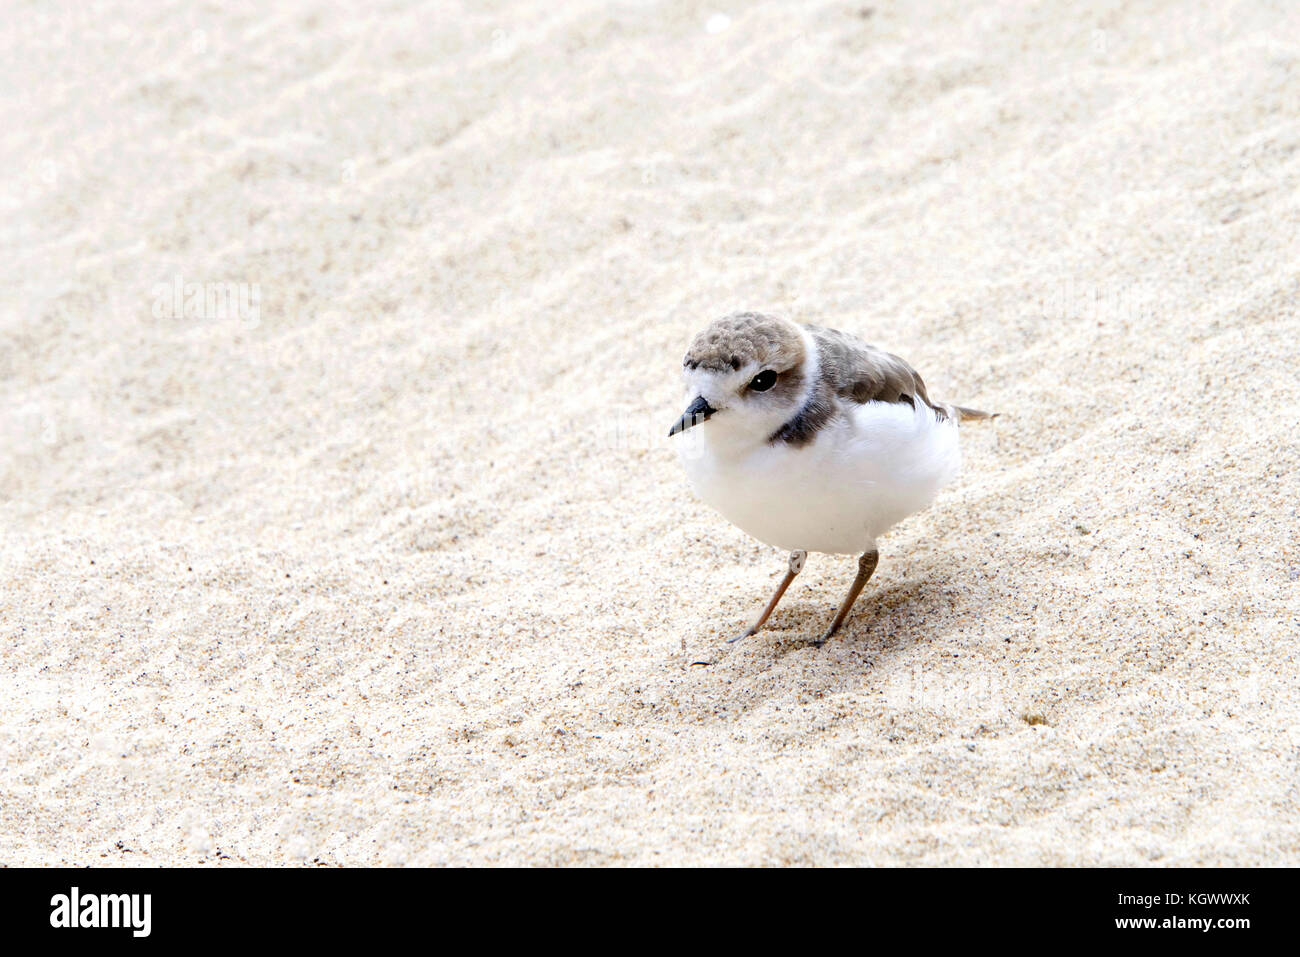 One Snowy Plover bird on a sandy beach Stock Photo